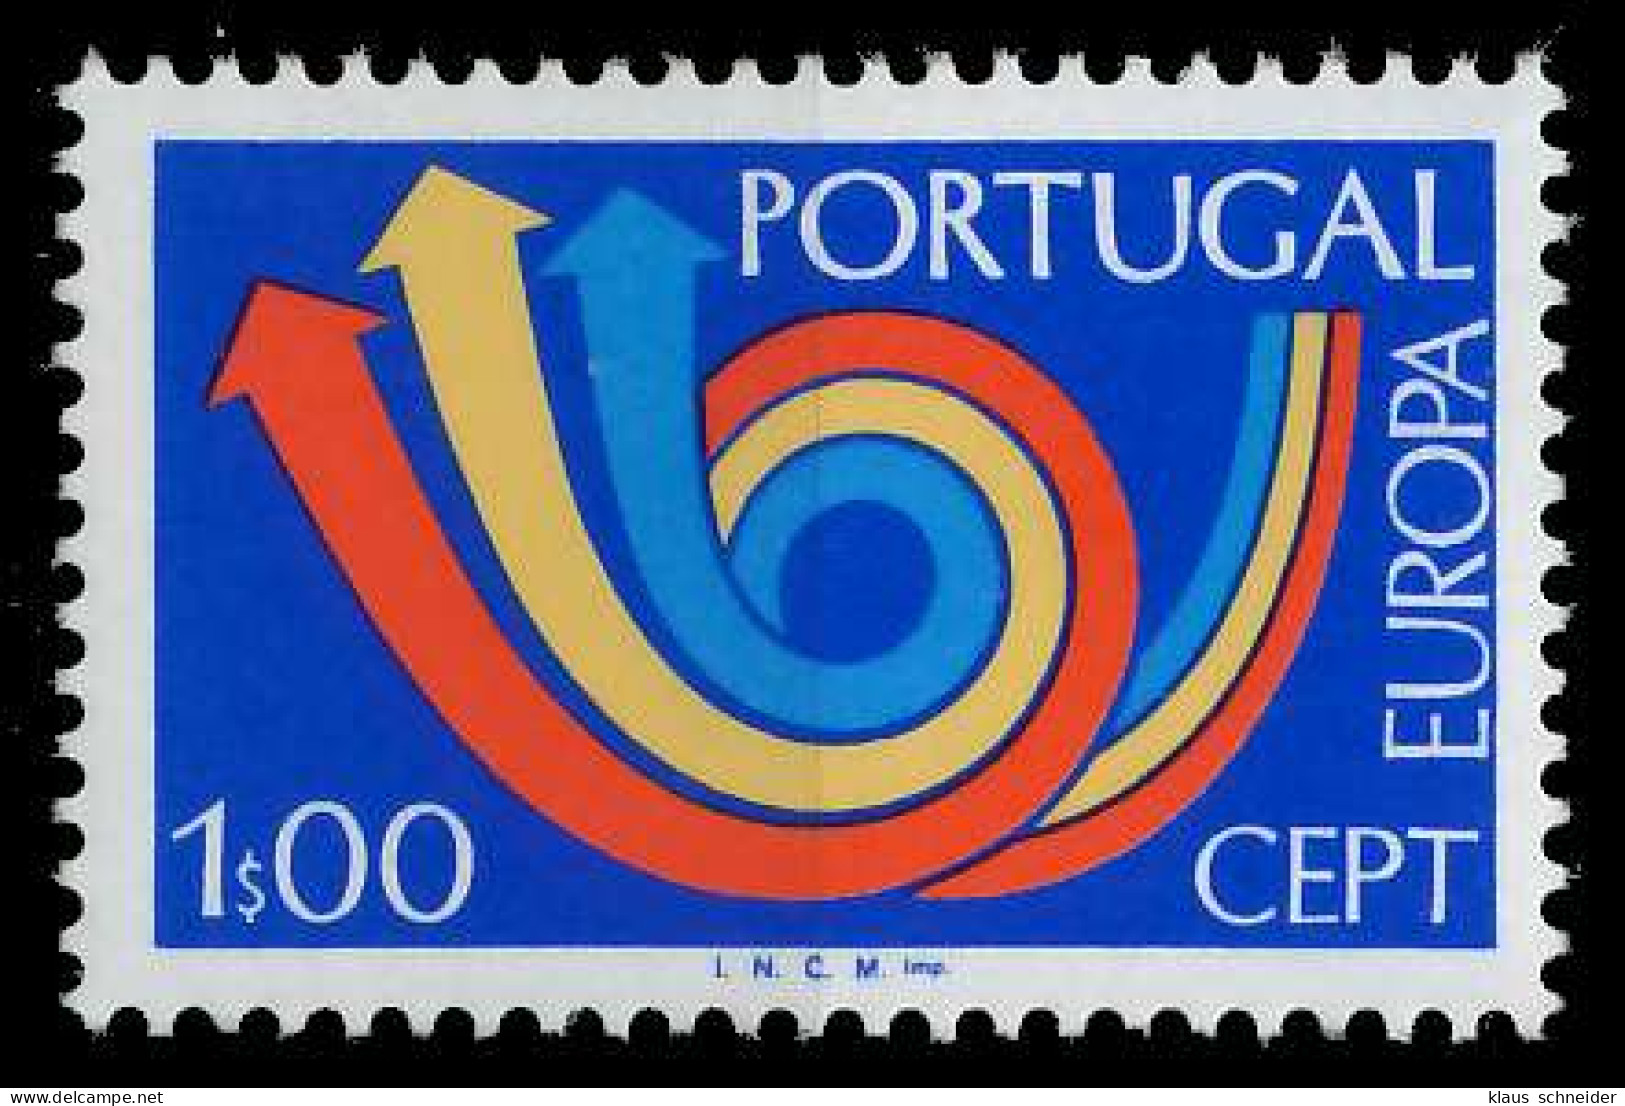 PORTUGAL 1973 Nr 1199 Postfrisch S7D9D9E - Neufs